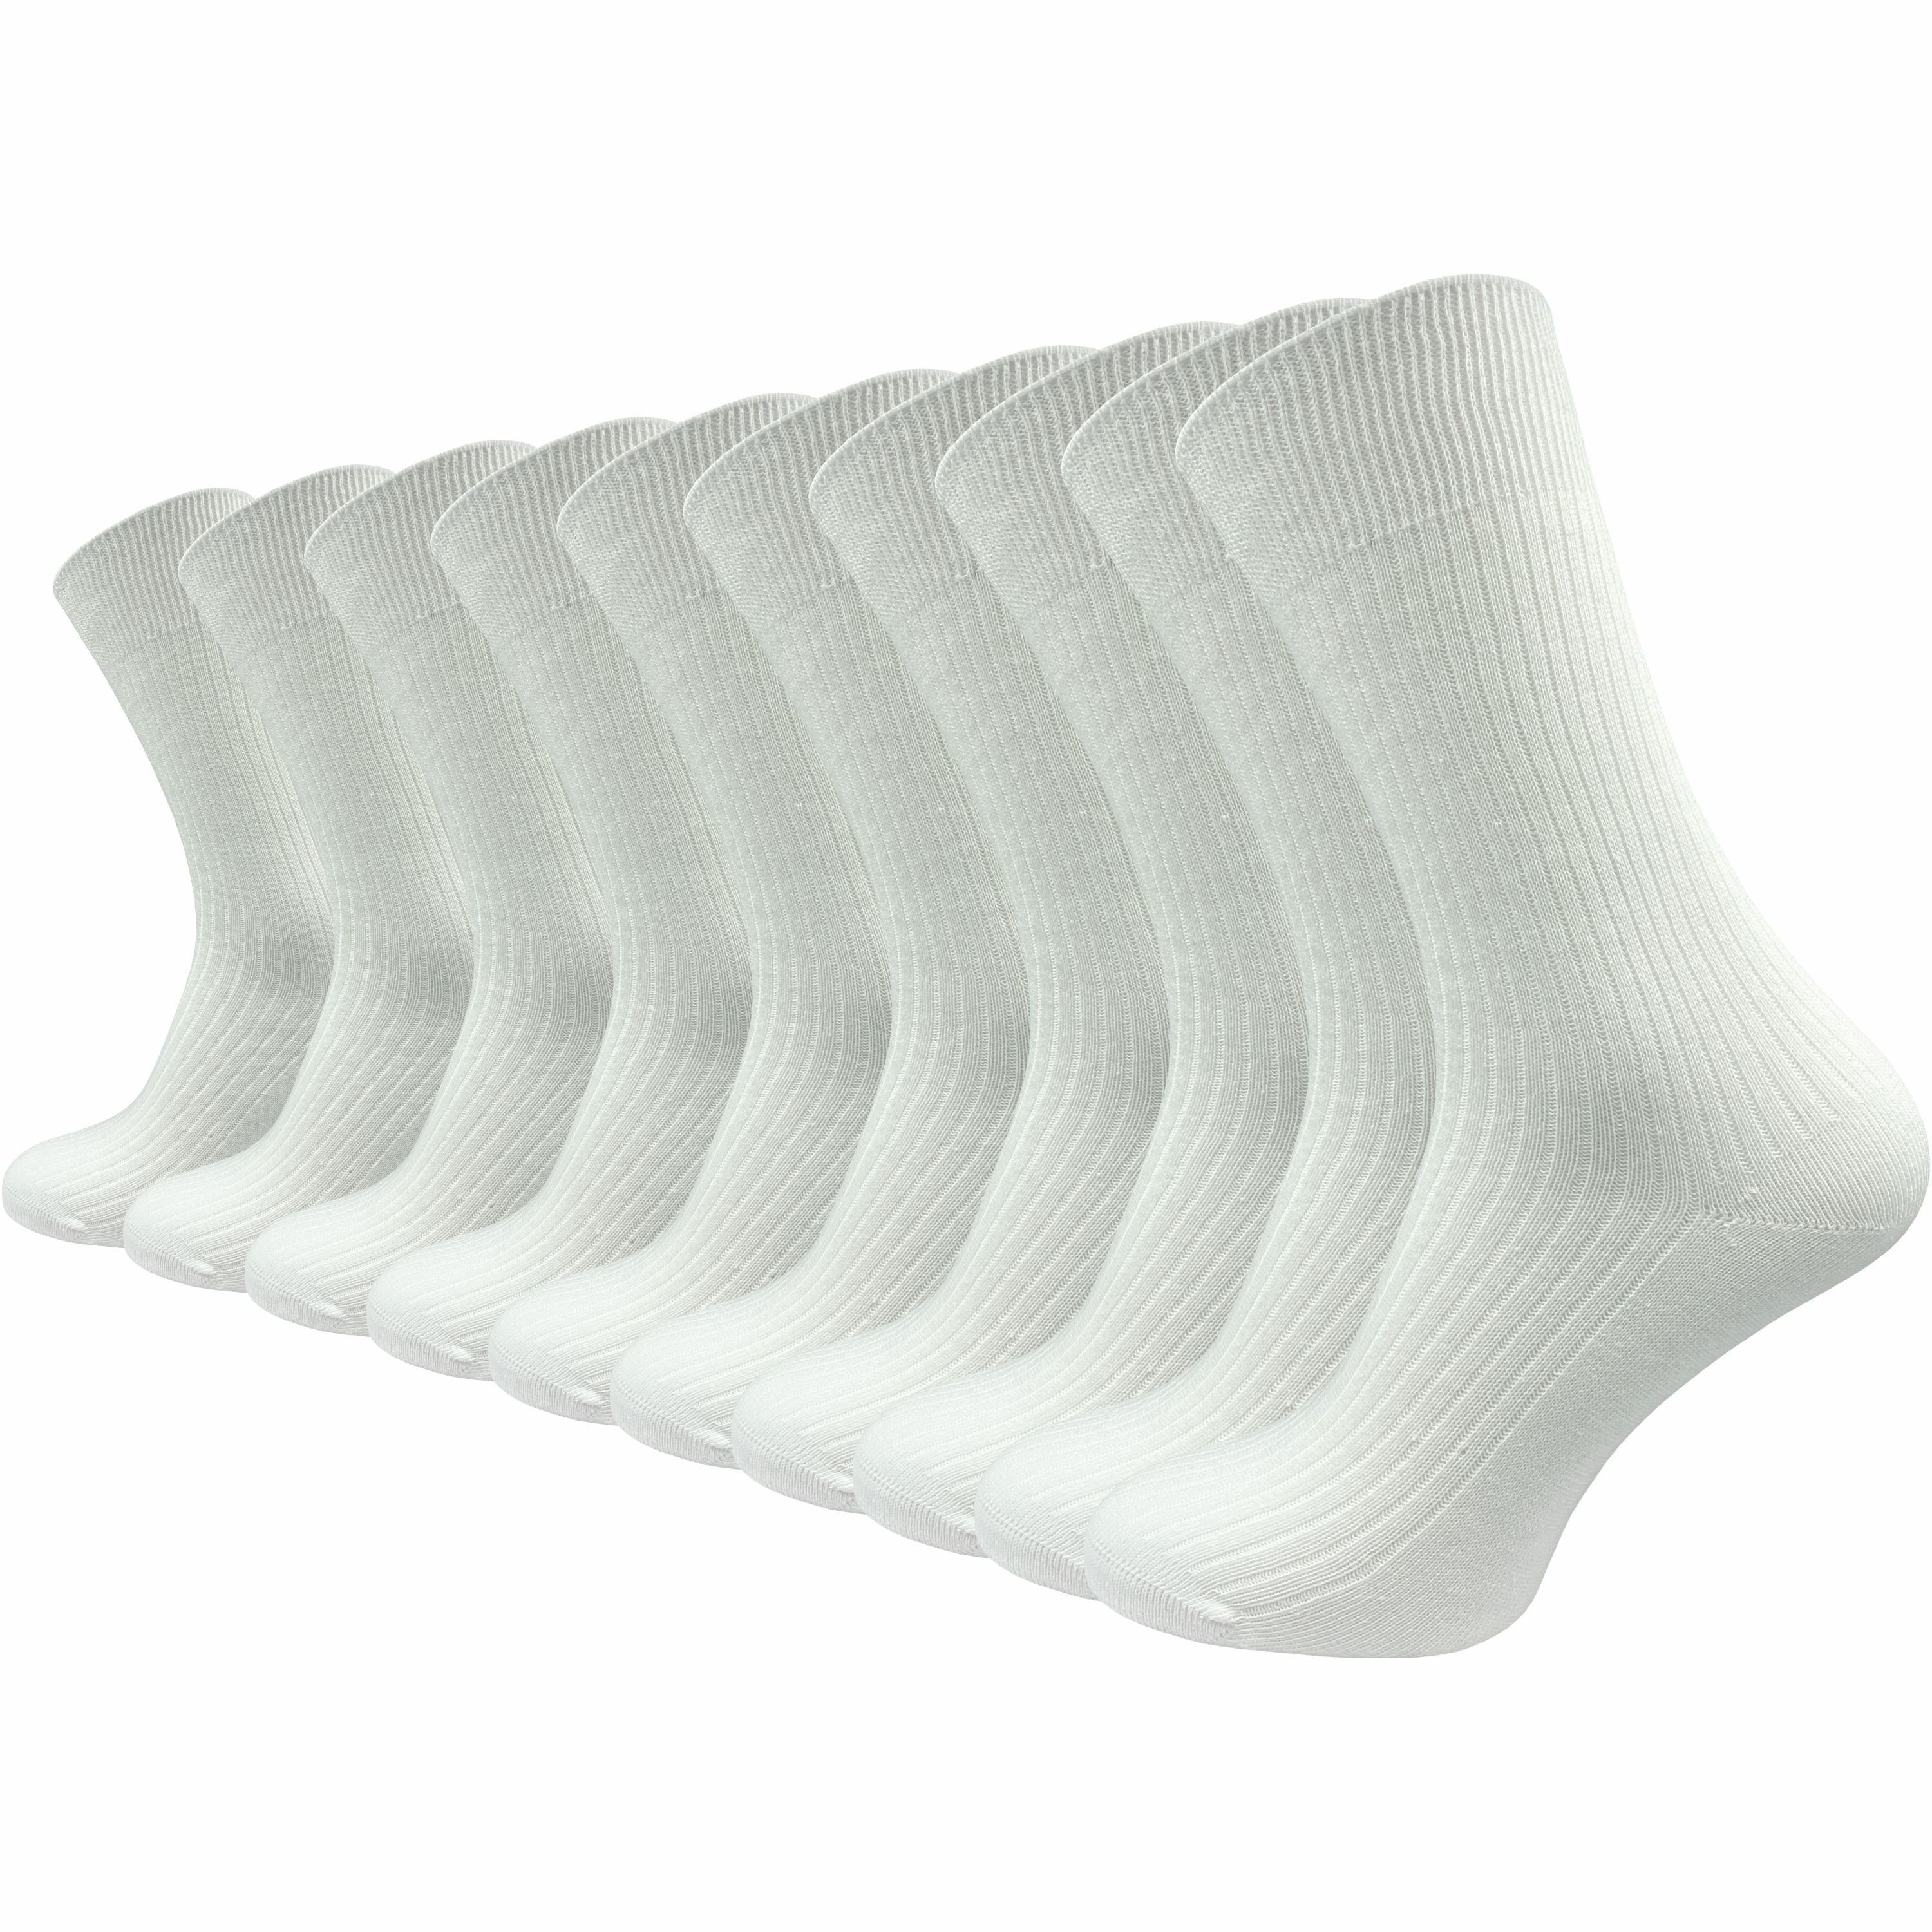 GAWILO Basicsocken "Natur" für Herren aus 100% Baumwolle in weiß - reine Baumwollsocken (10 Paar) Atmungsaktive Baumwolle gegen Schweißfüße - mit stabilisierender Rippe